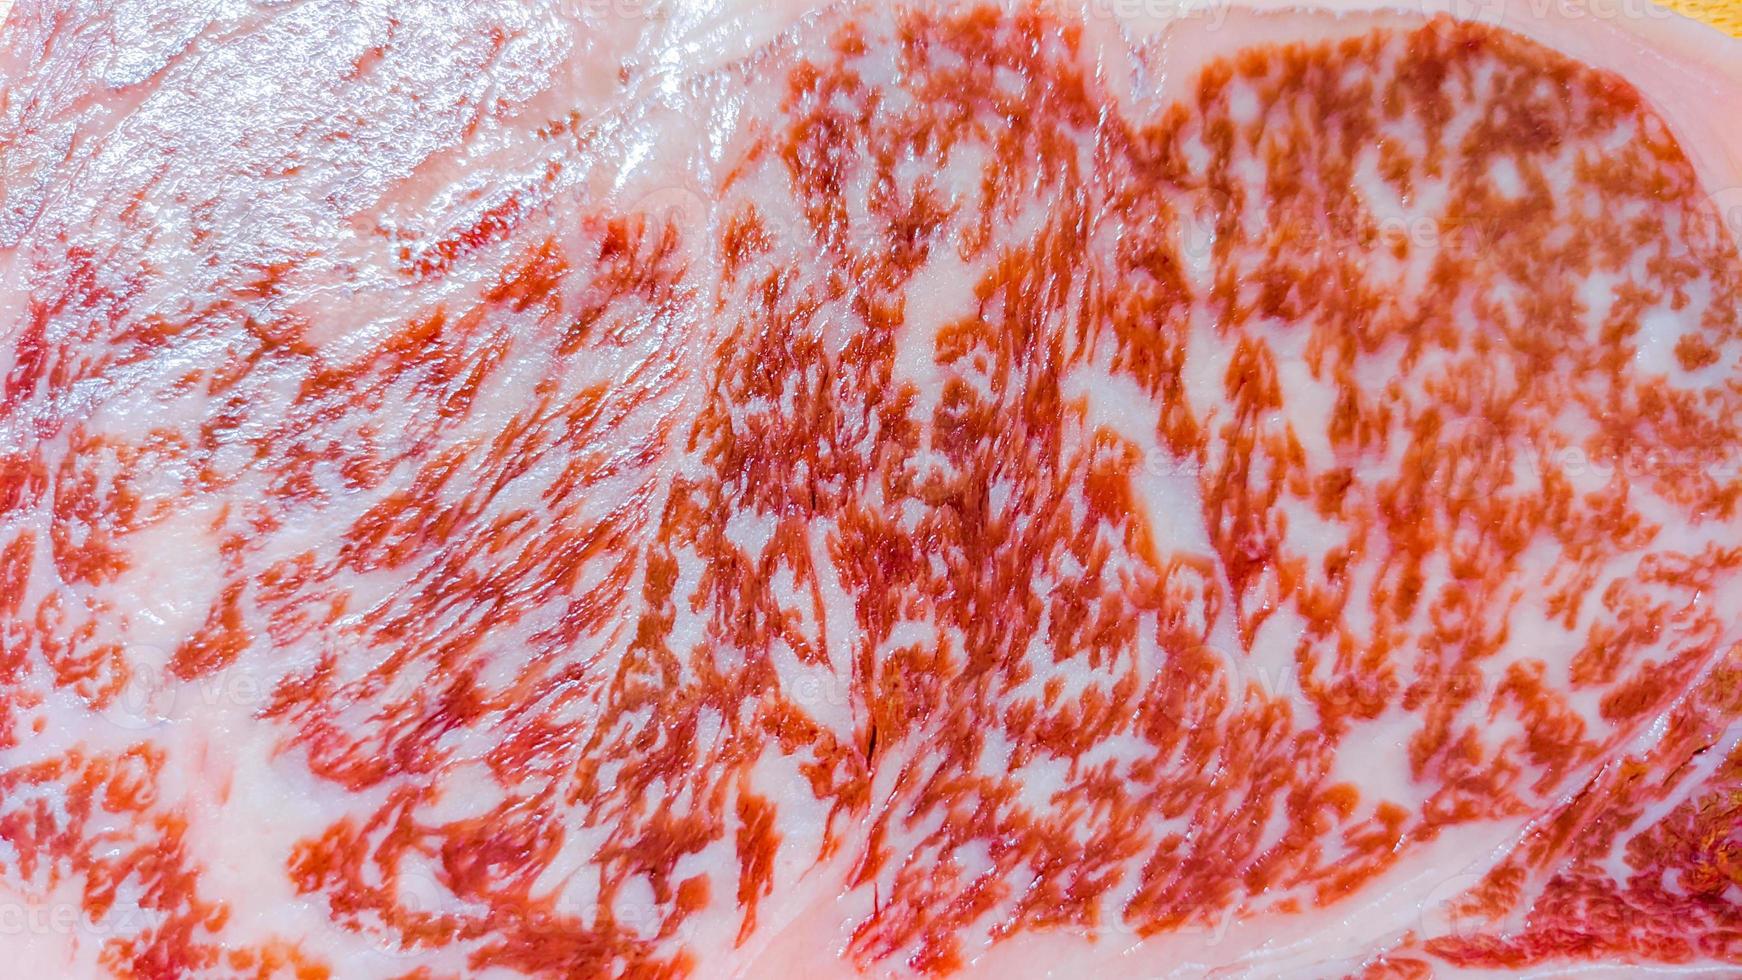 chuletón kagoshima a5 wagyu de la granja nozaki, kyushu, japón. carne de primera calidad. vista de cerca macro foto